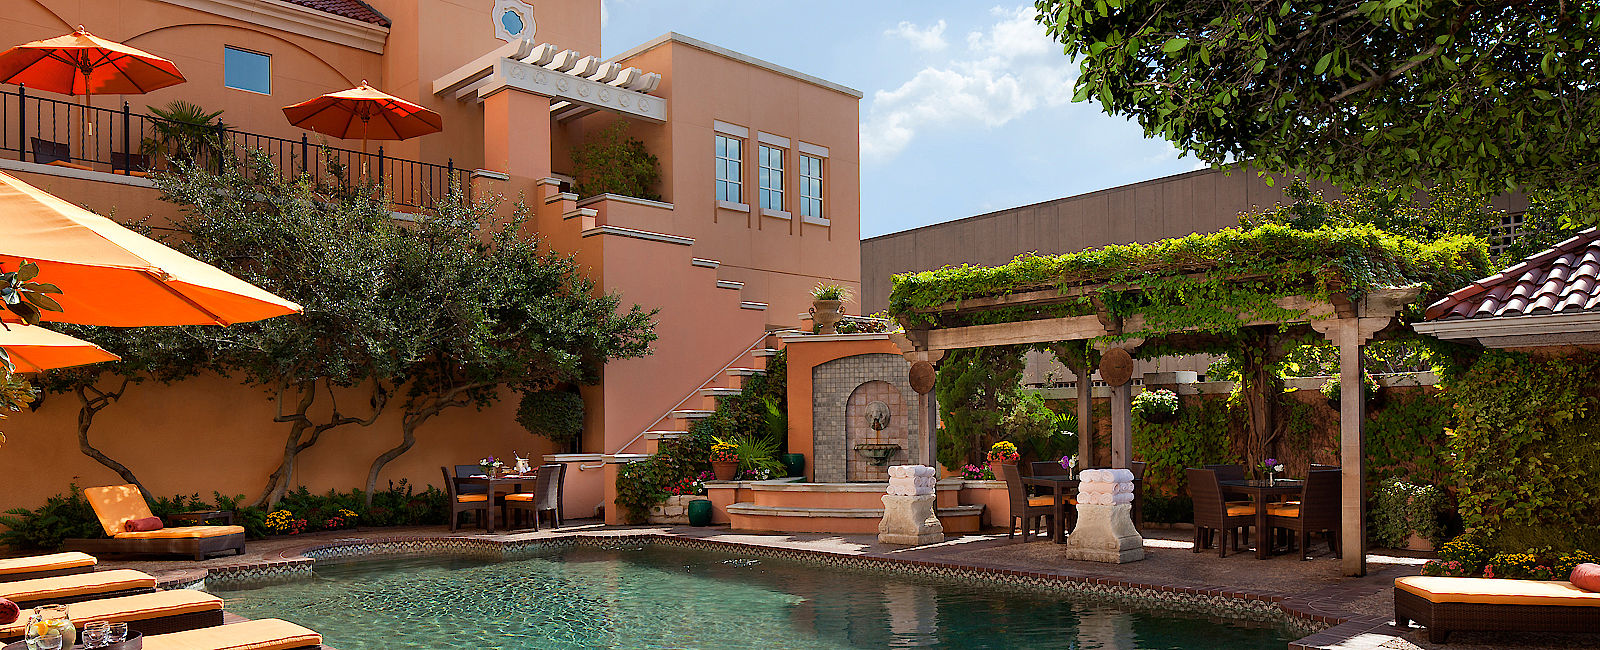 HOTEL TIPPS
 Rosewood Mansion on Turtle Creek 
 Luxus Anwesen im mediterranen Stil 